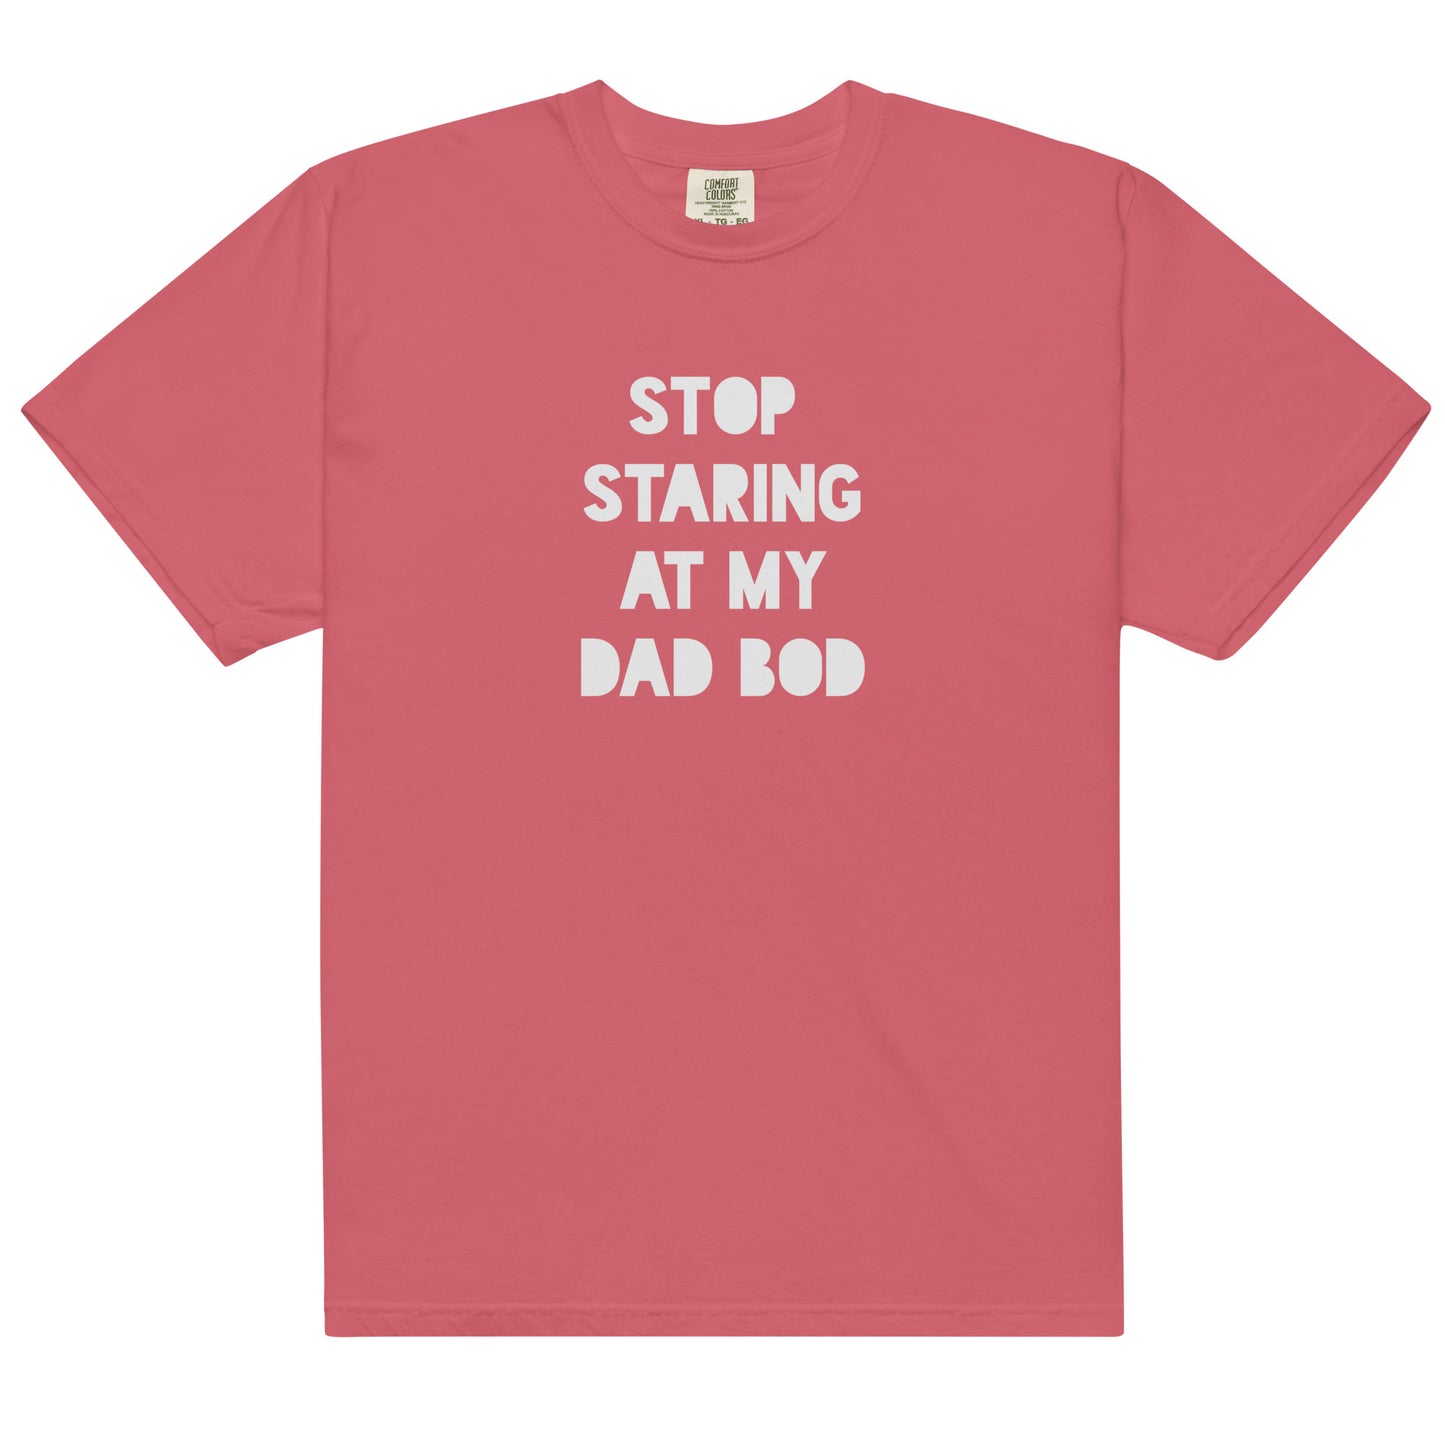 Stop Staring At My Dad Bod Printed Tshirt